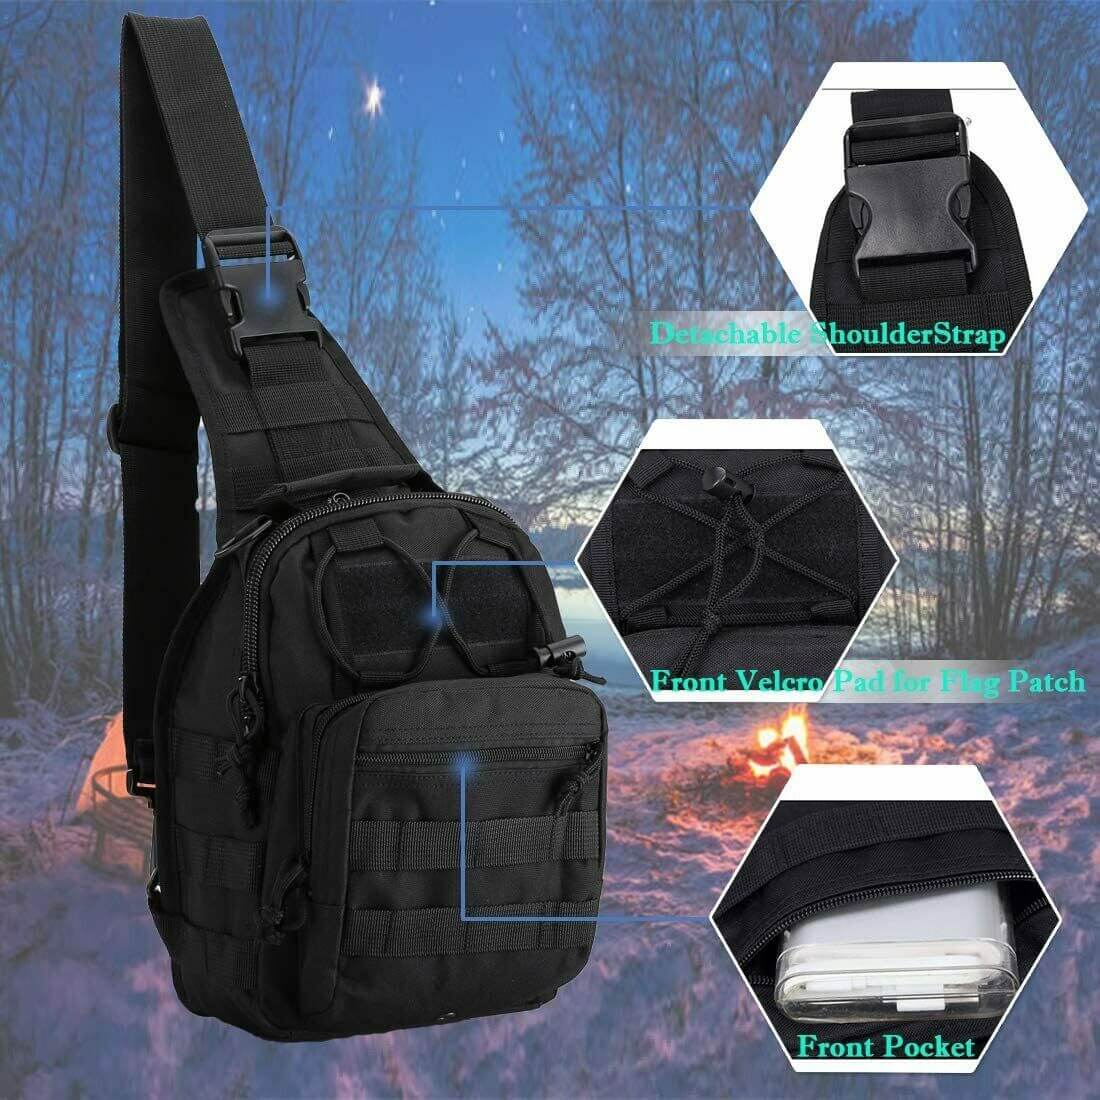 Black Tactical Sling Bag - Men's Molle Chest and Shoulder Backpack